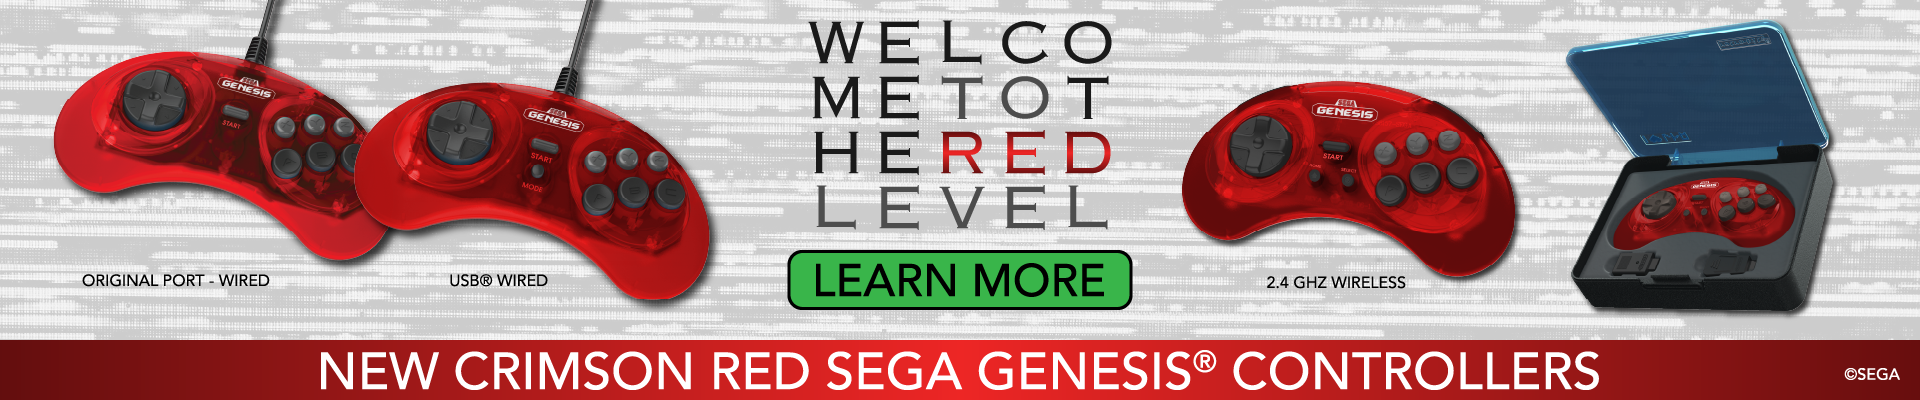 SEGA Genesis Crimson Red Controllers - Pre-order